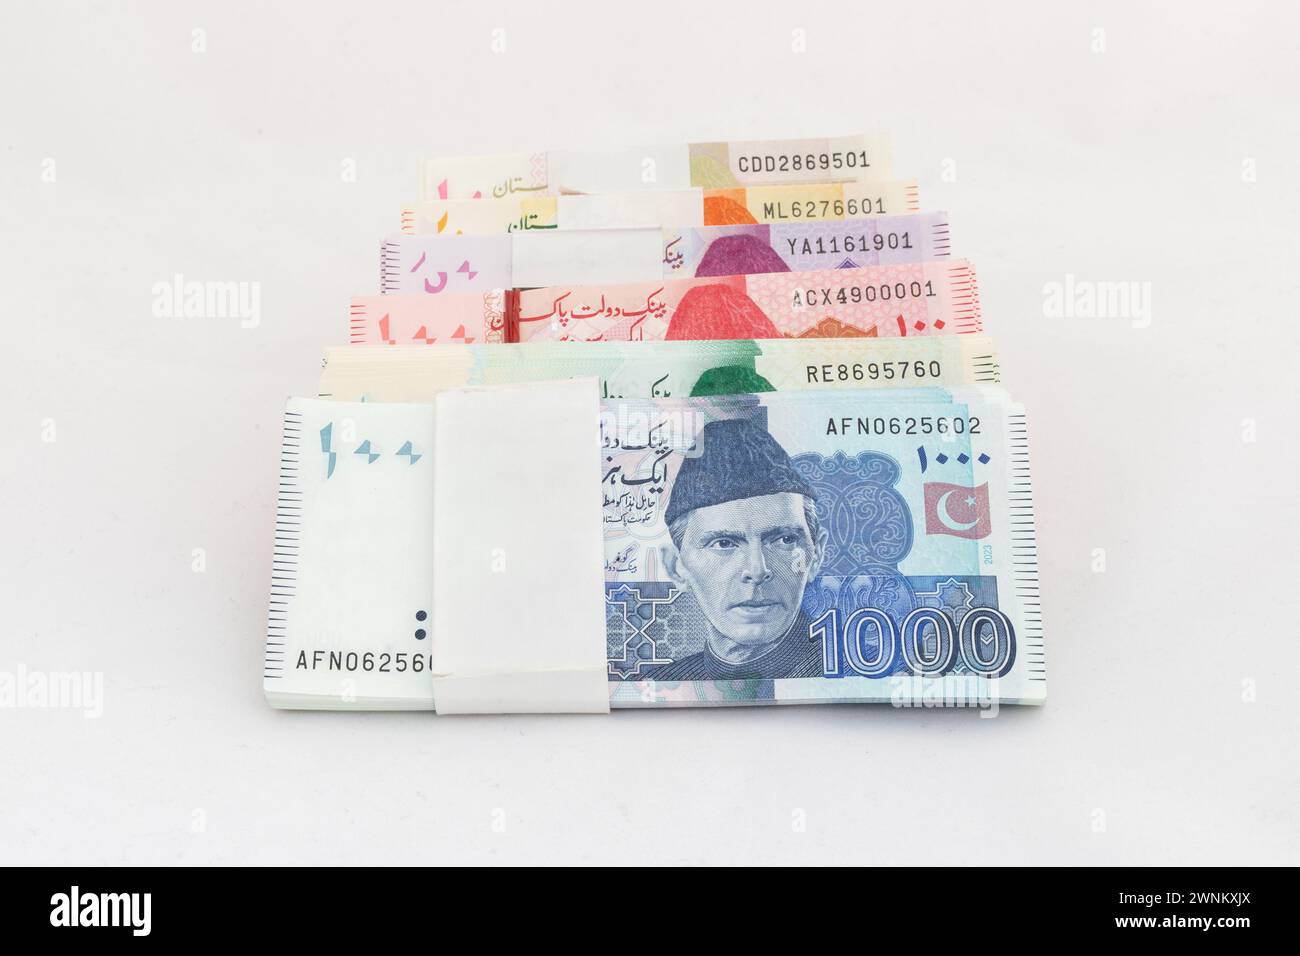 Pacchetti di banconote in valuta pakistana su sfondo bianco isolato Foto Stock